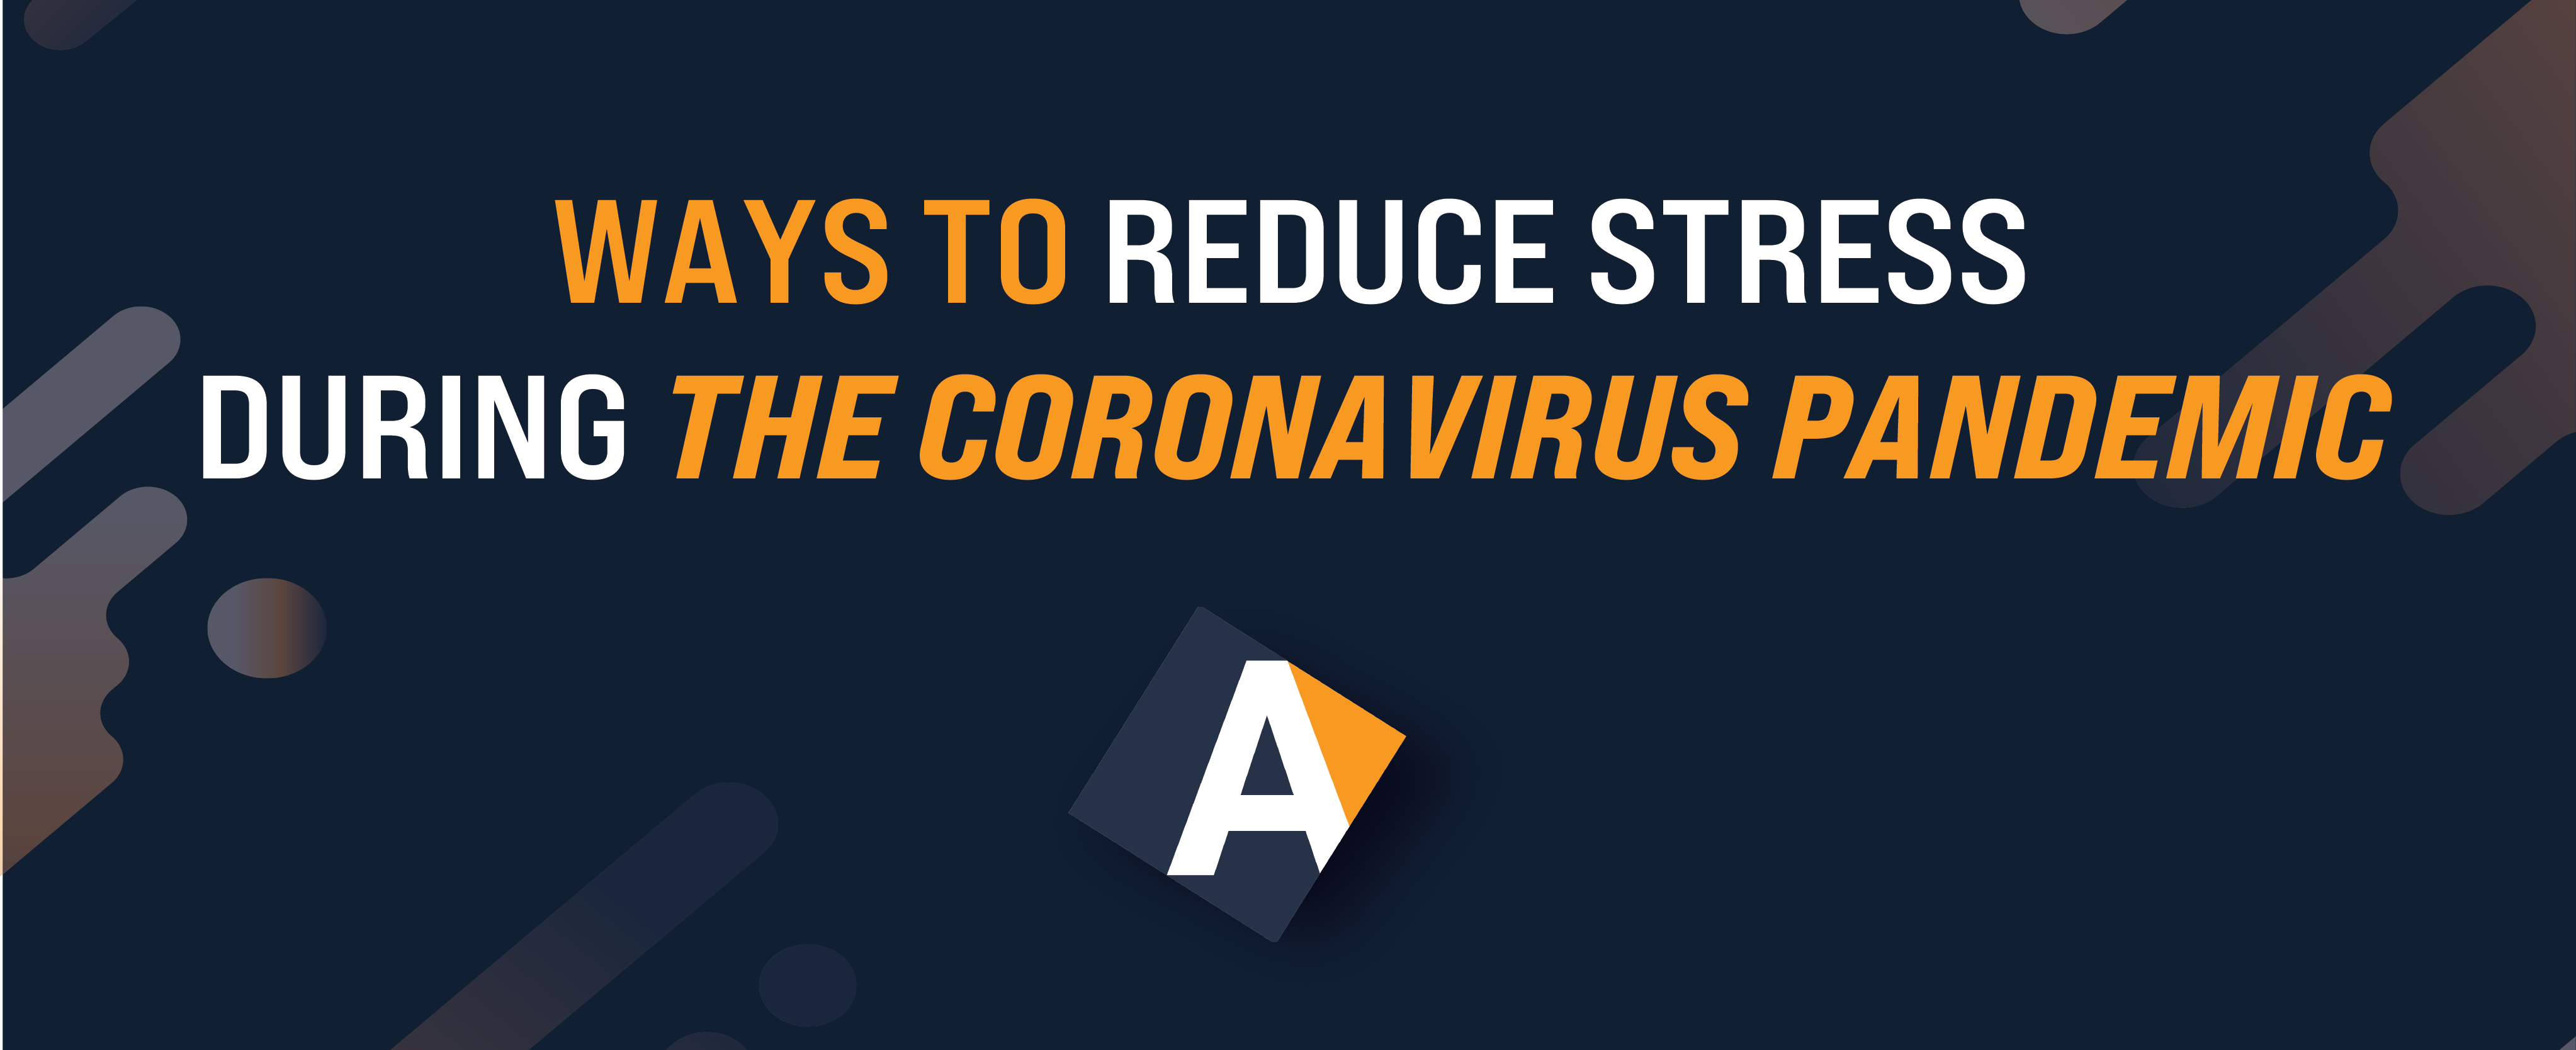 reduce-stress-coronavirus-pandemic